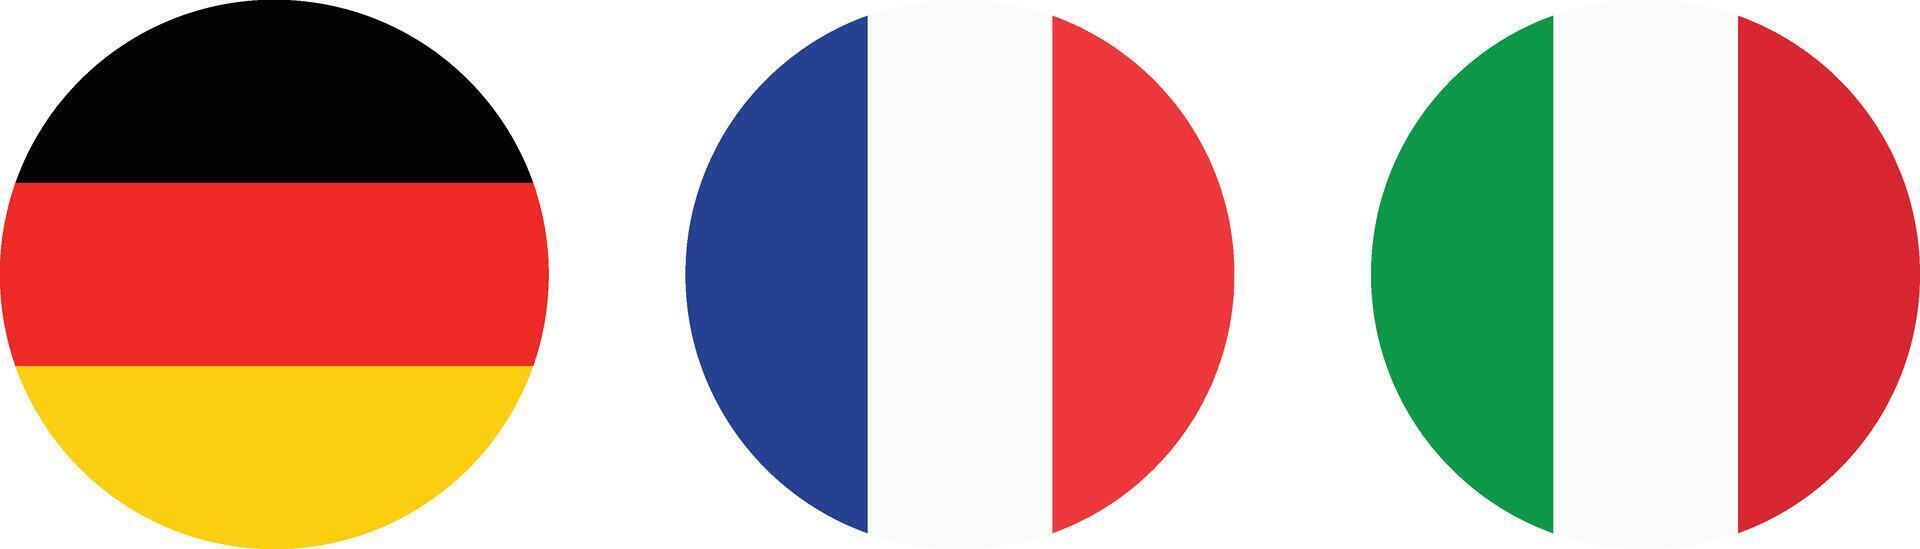 Alemania , Francia y Italia redondo bandera . Europa nacional bandera circulo icono conjunto vector